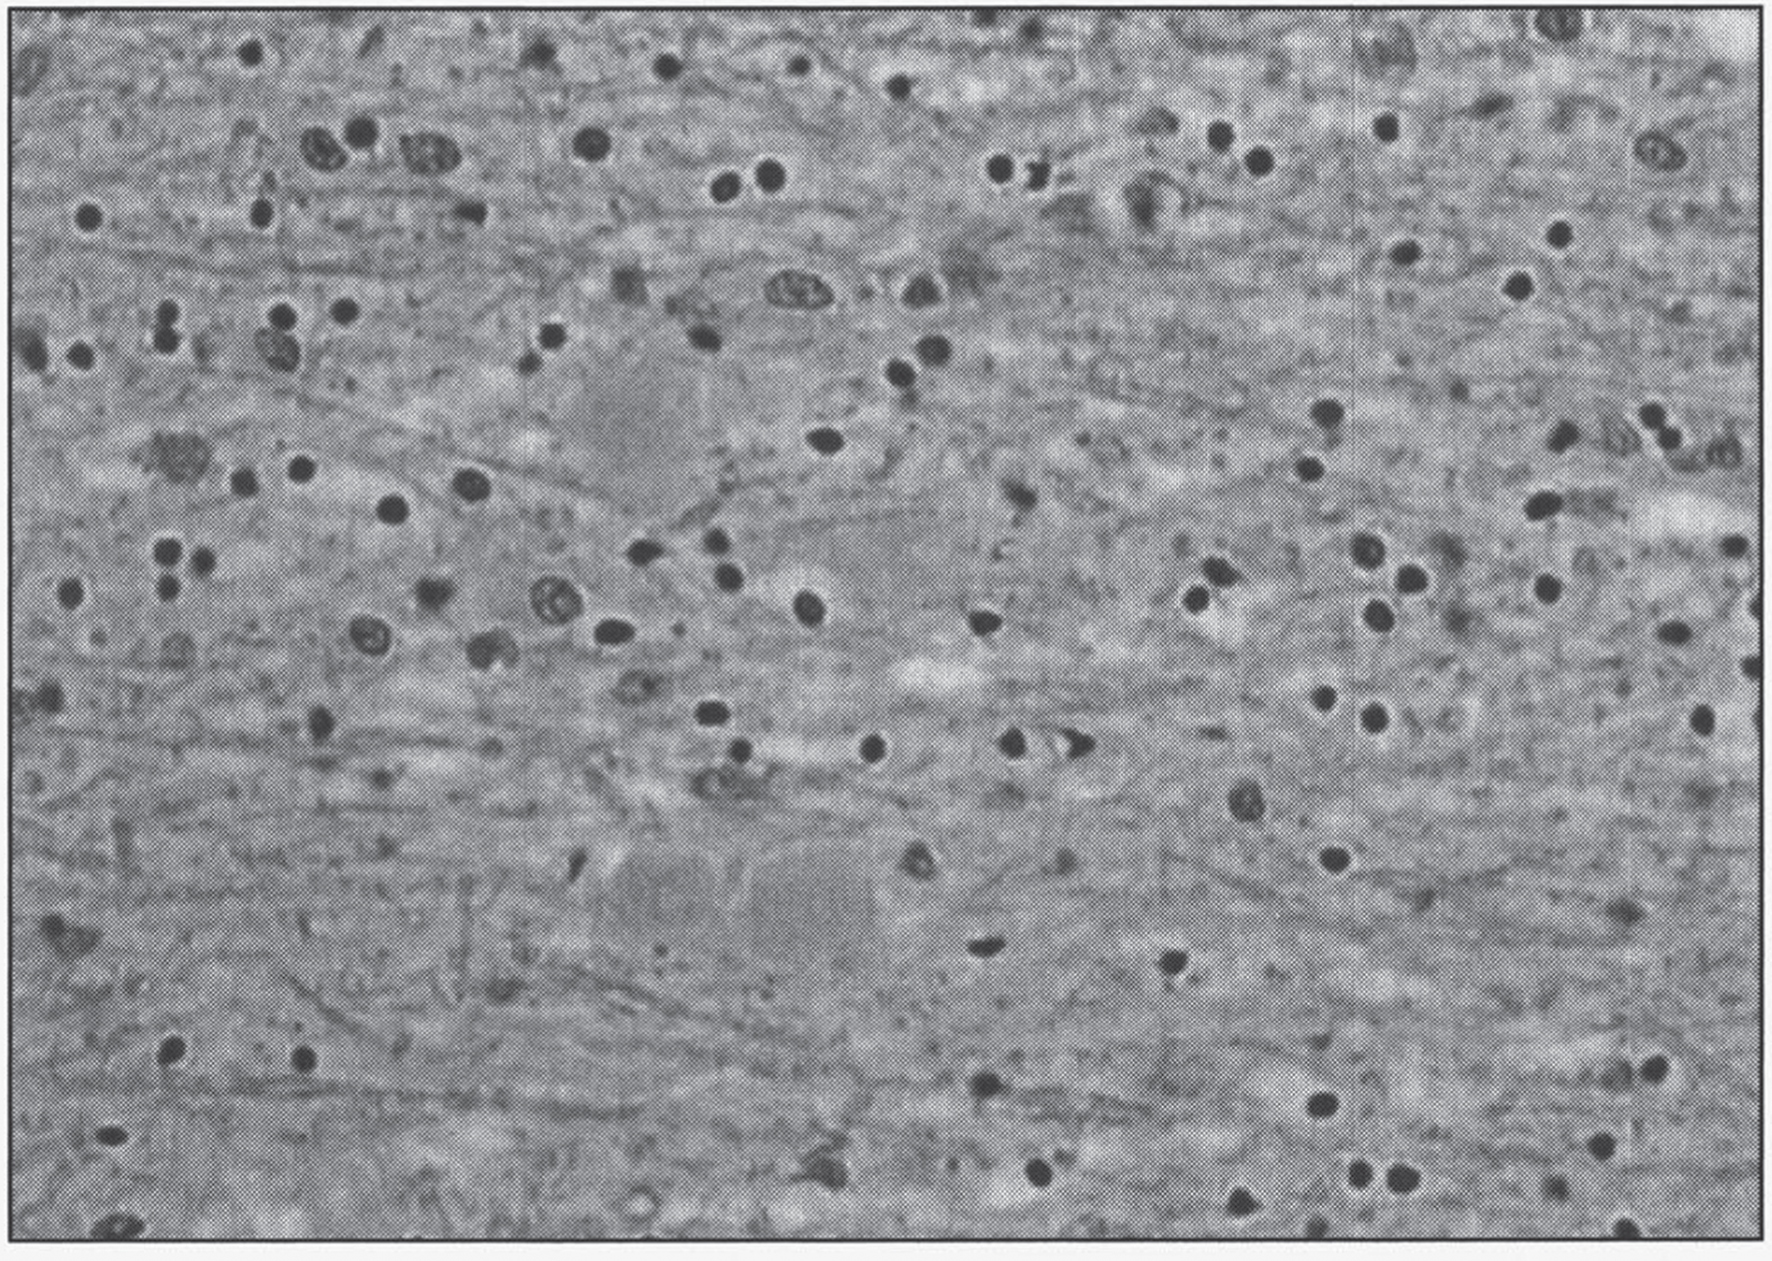 Neuroaxonal leukodystrophy. There are axonal spheroids in white matter associated with myelin degeneration.